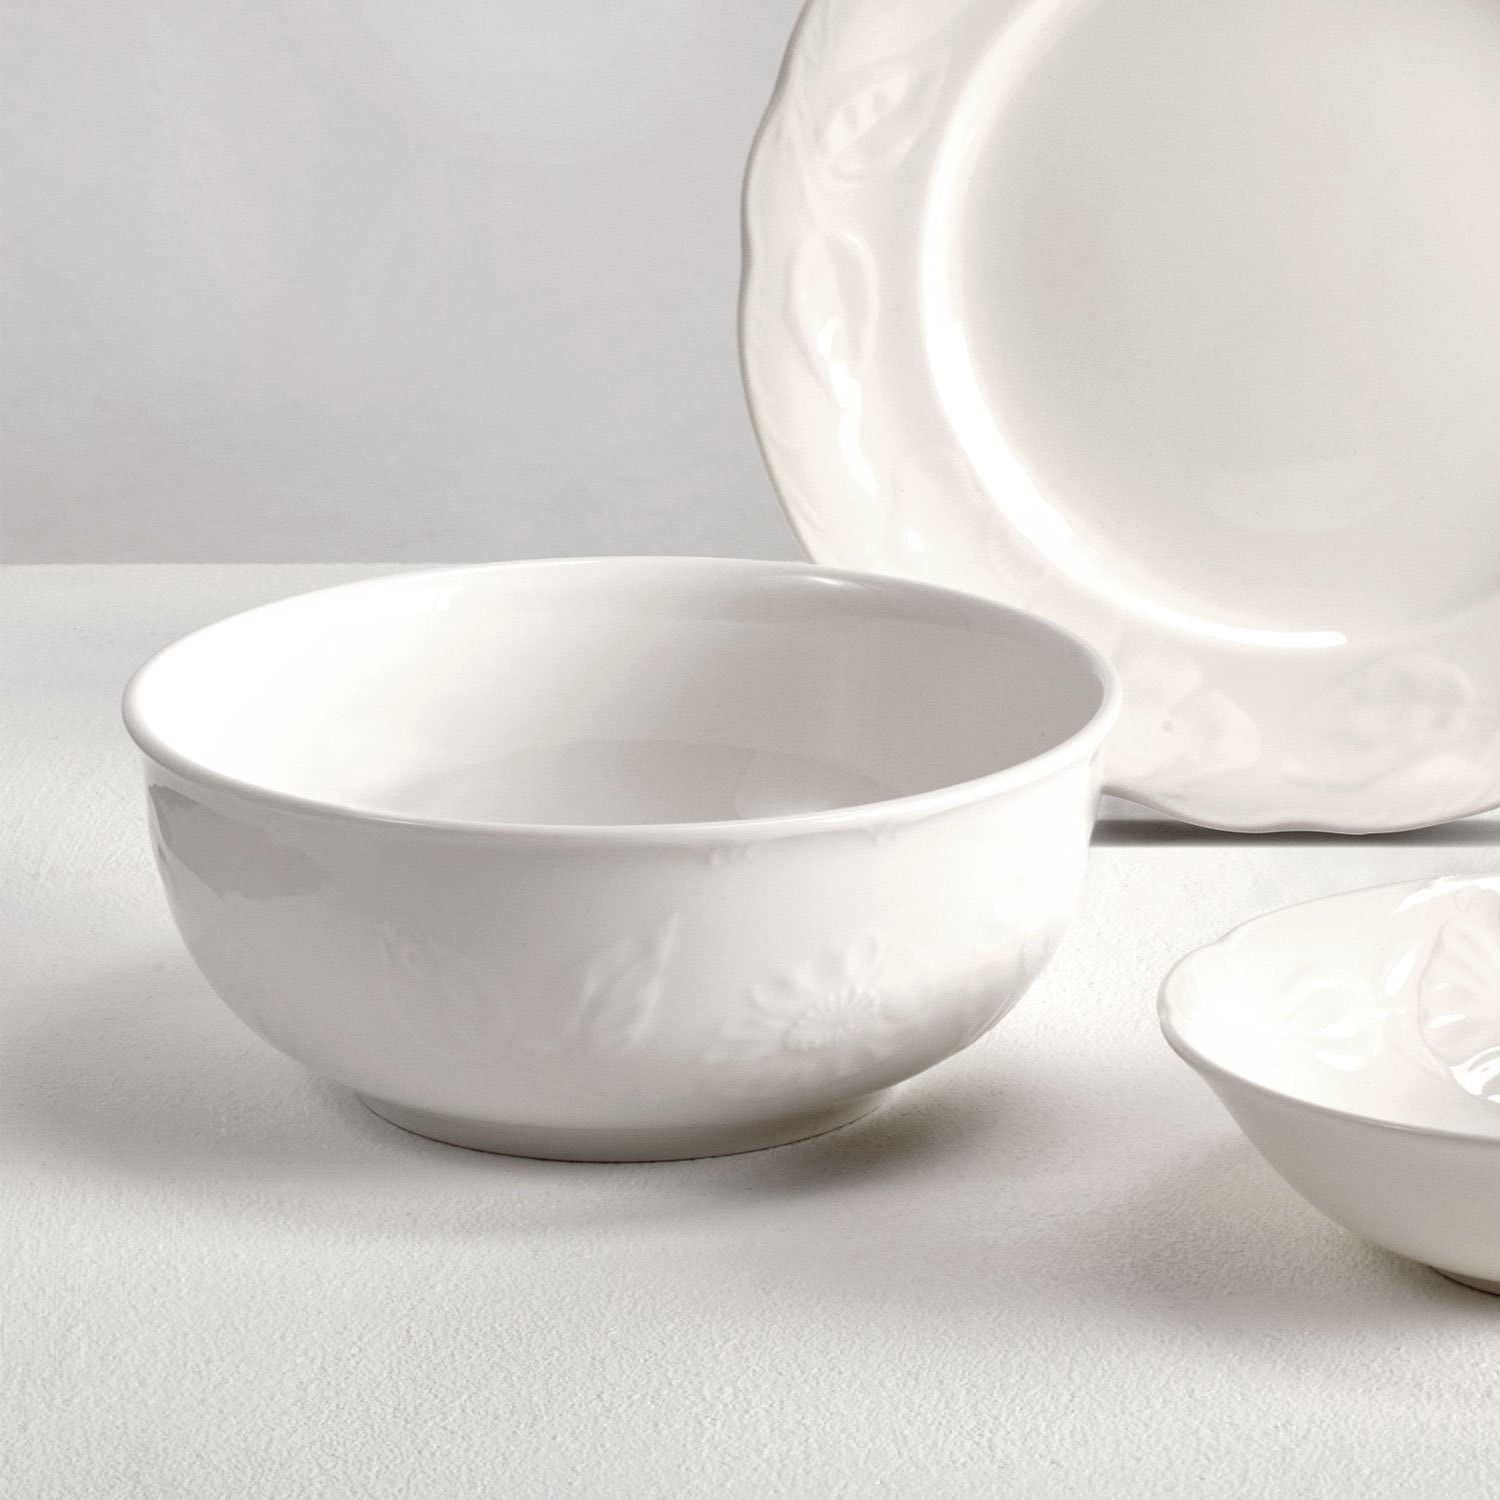 Villeroy & Boch Villeroy und Boch Rose Sauvage Blanche Dinner Plate, 26 cm, Premium Porcelain, White